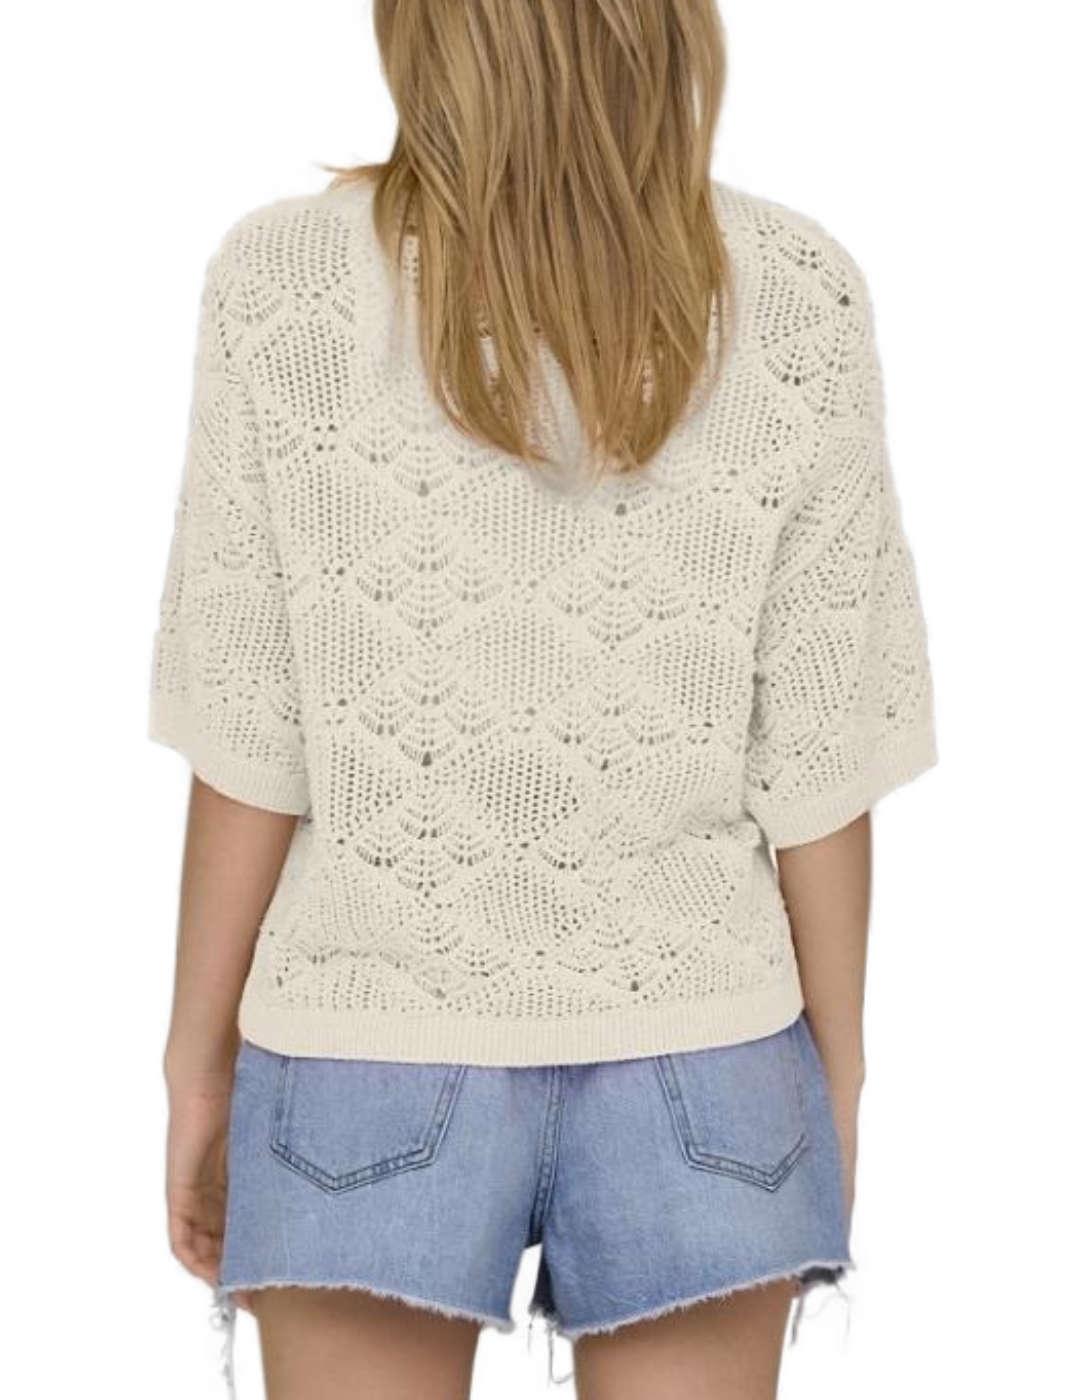 Camiseta crochet Only Lydia beigemanga 3/4 para mujer